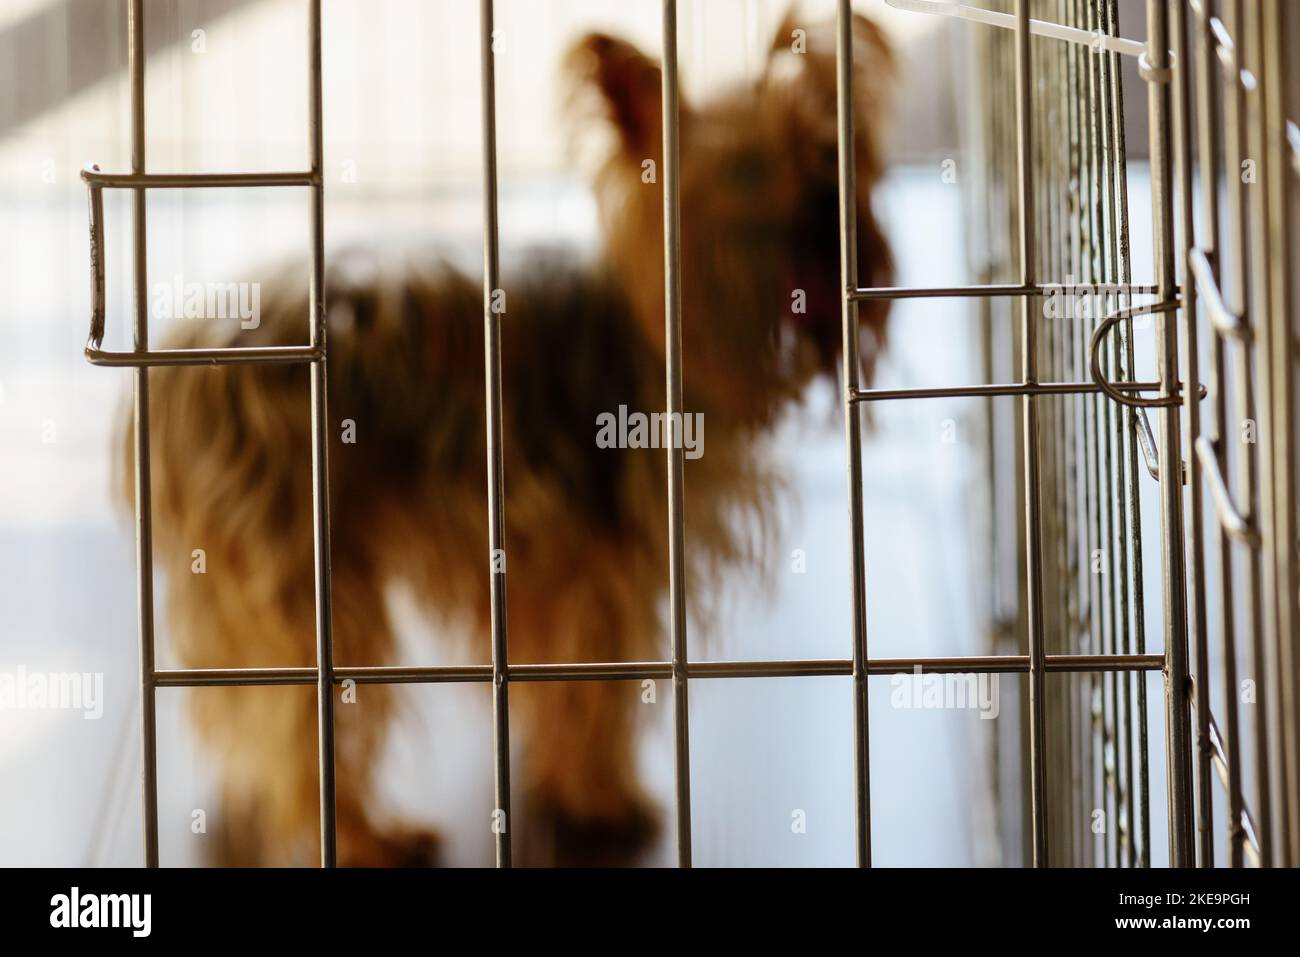 Hund leidet unter Trennung Angst bleibt im Käfig, Fehlverhalten zu verhindern Stockfoto